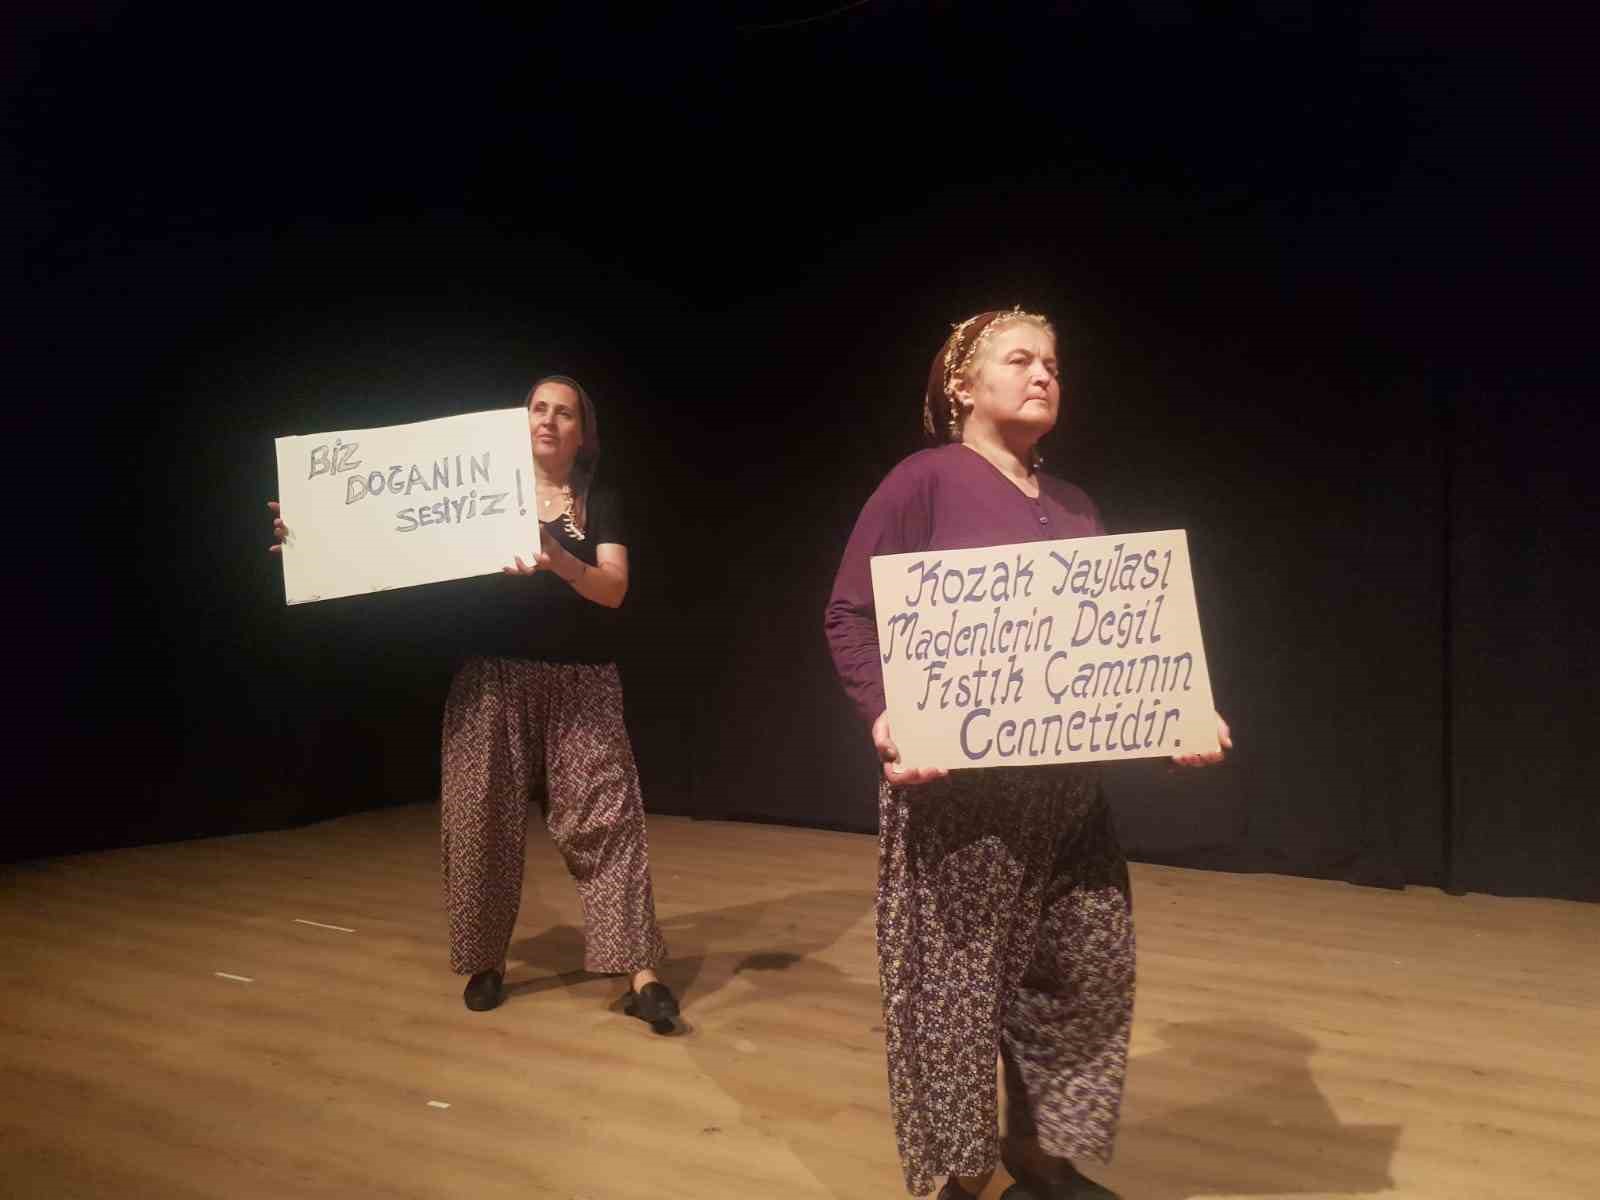 Bergamalı köylü kadınlardan tiyatro gösterisi